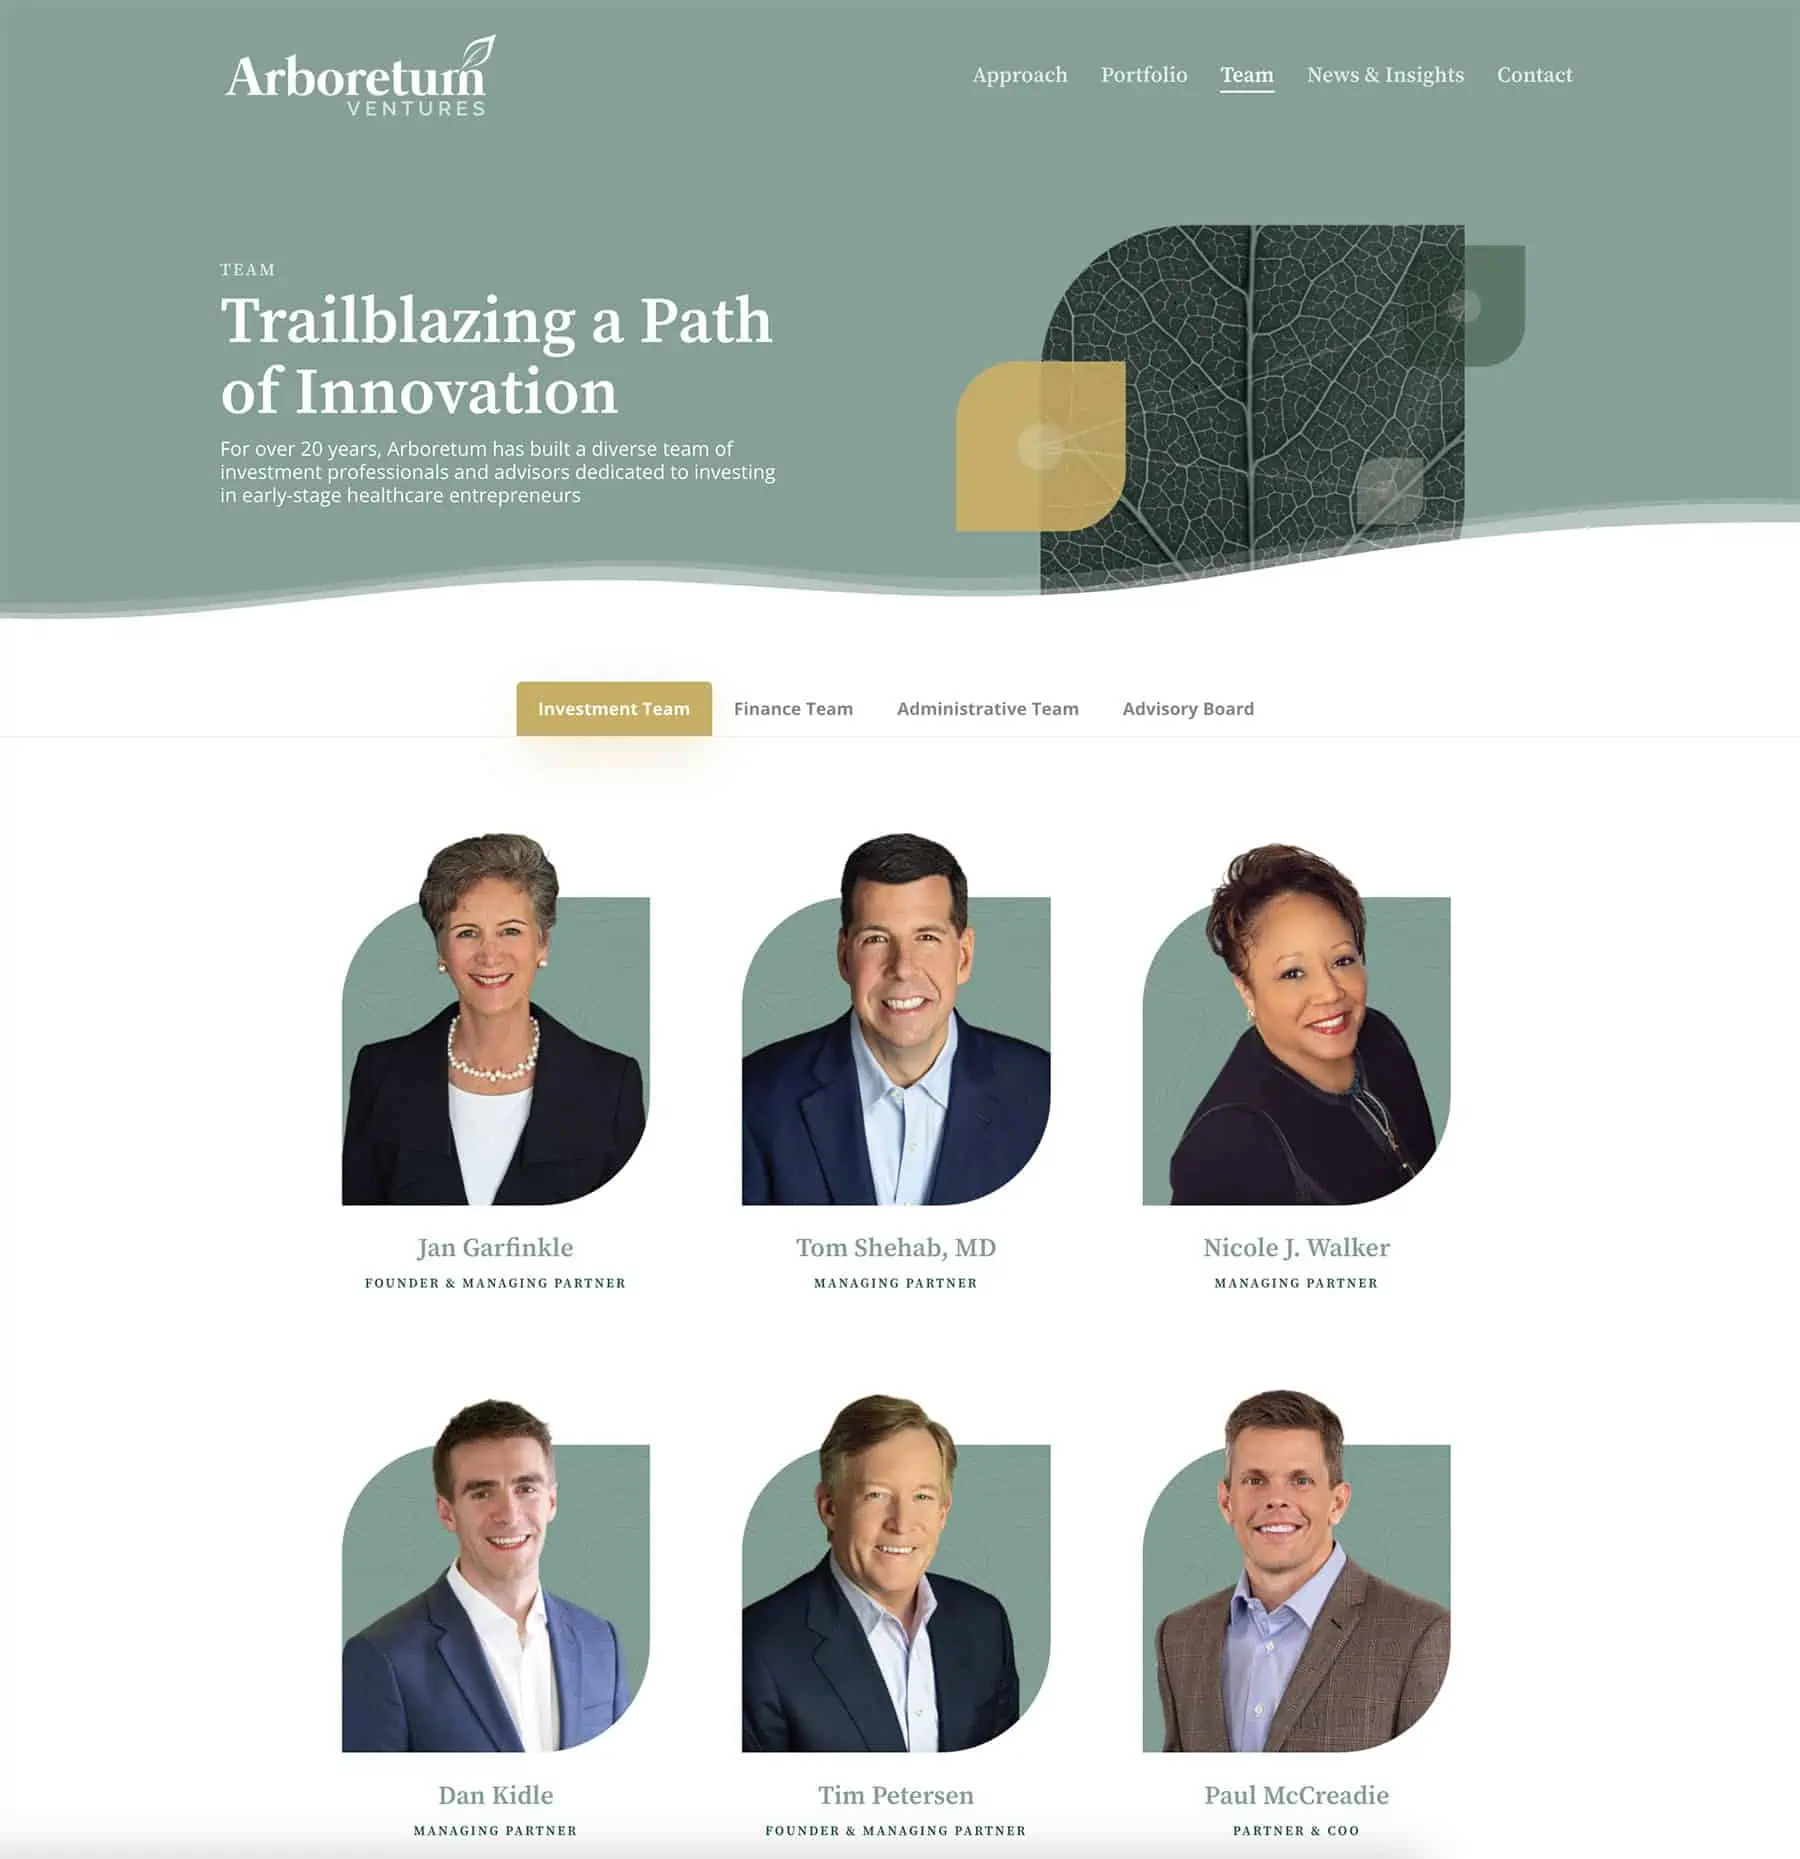 arboretum ventures team page on website redesign